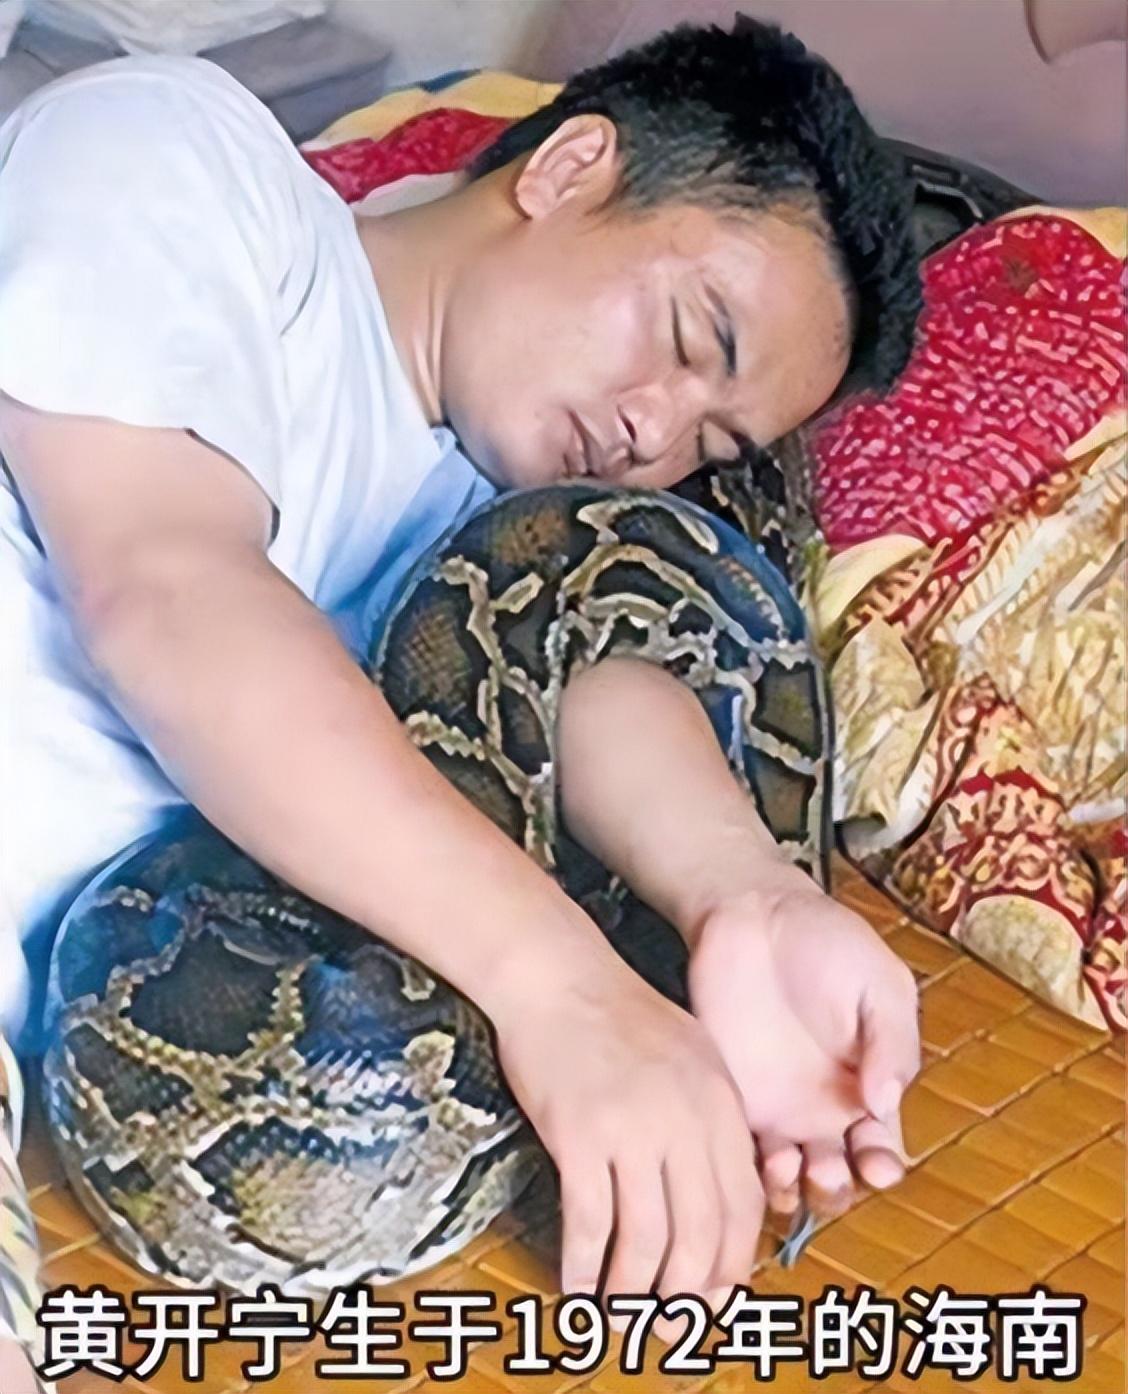 96年蟒蛇为报恩甘愿当保姆:与主人同眠,还为其看家护院